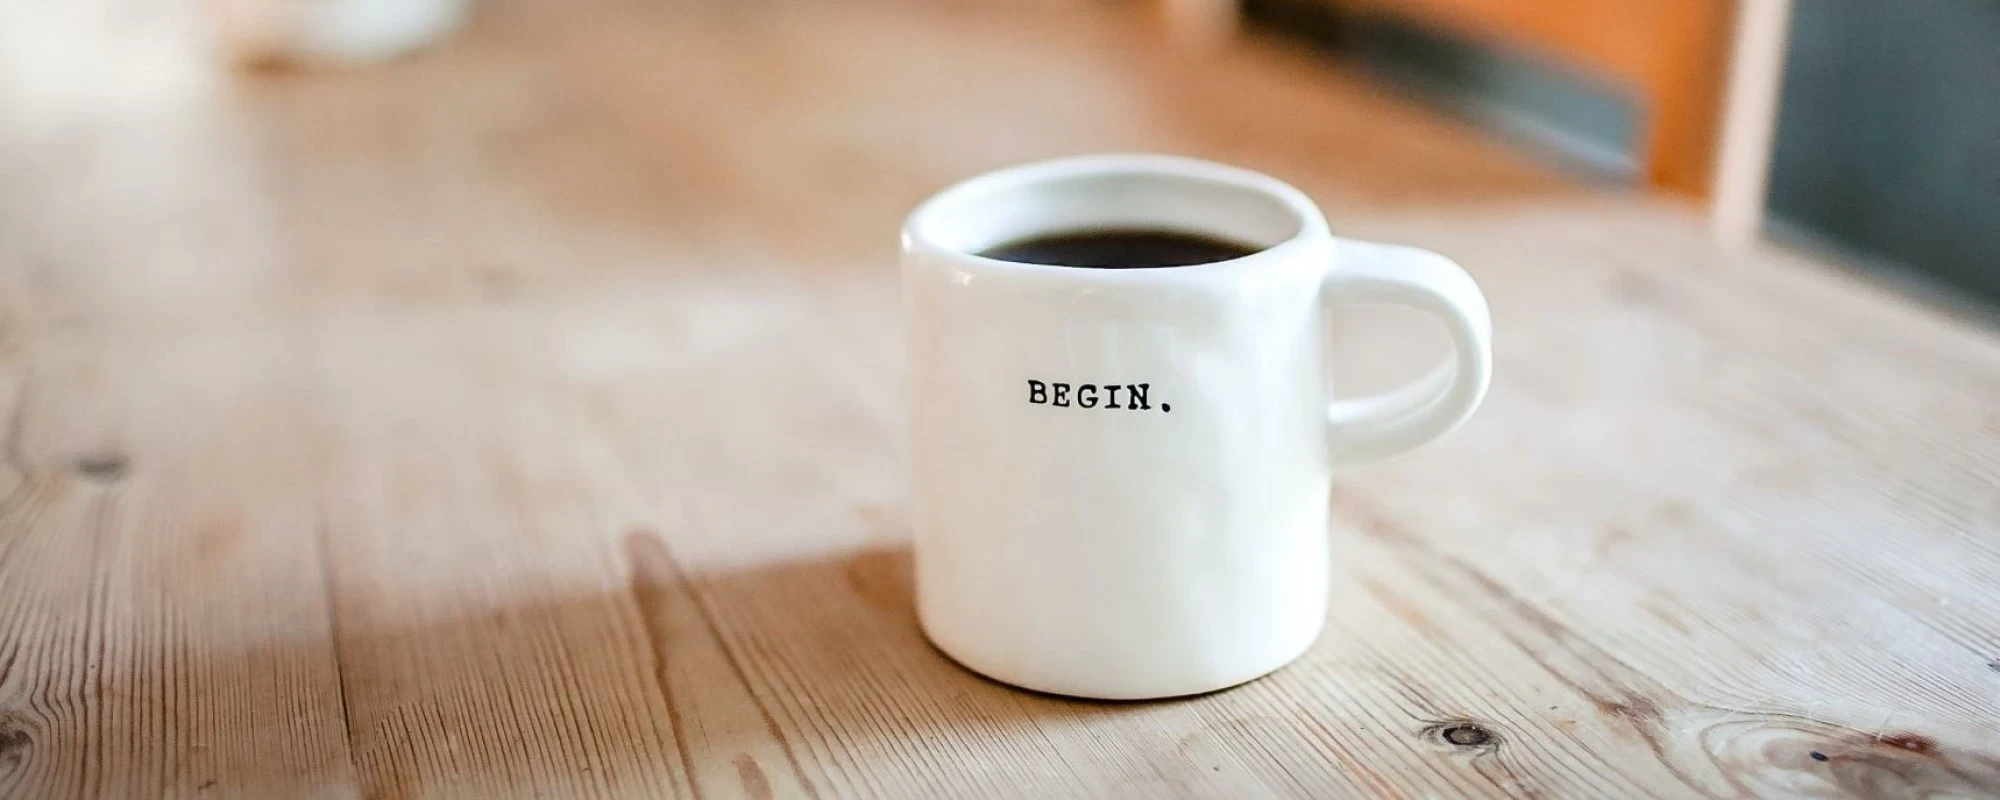 Eine weiße Tasse auf einem Holztisch mit dem Schriftzug "Begin". | SPIRIT/21